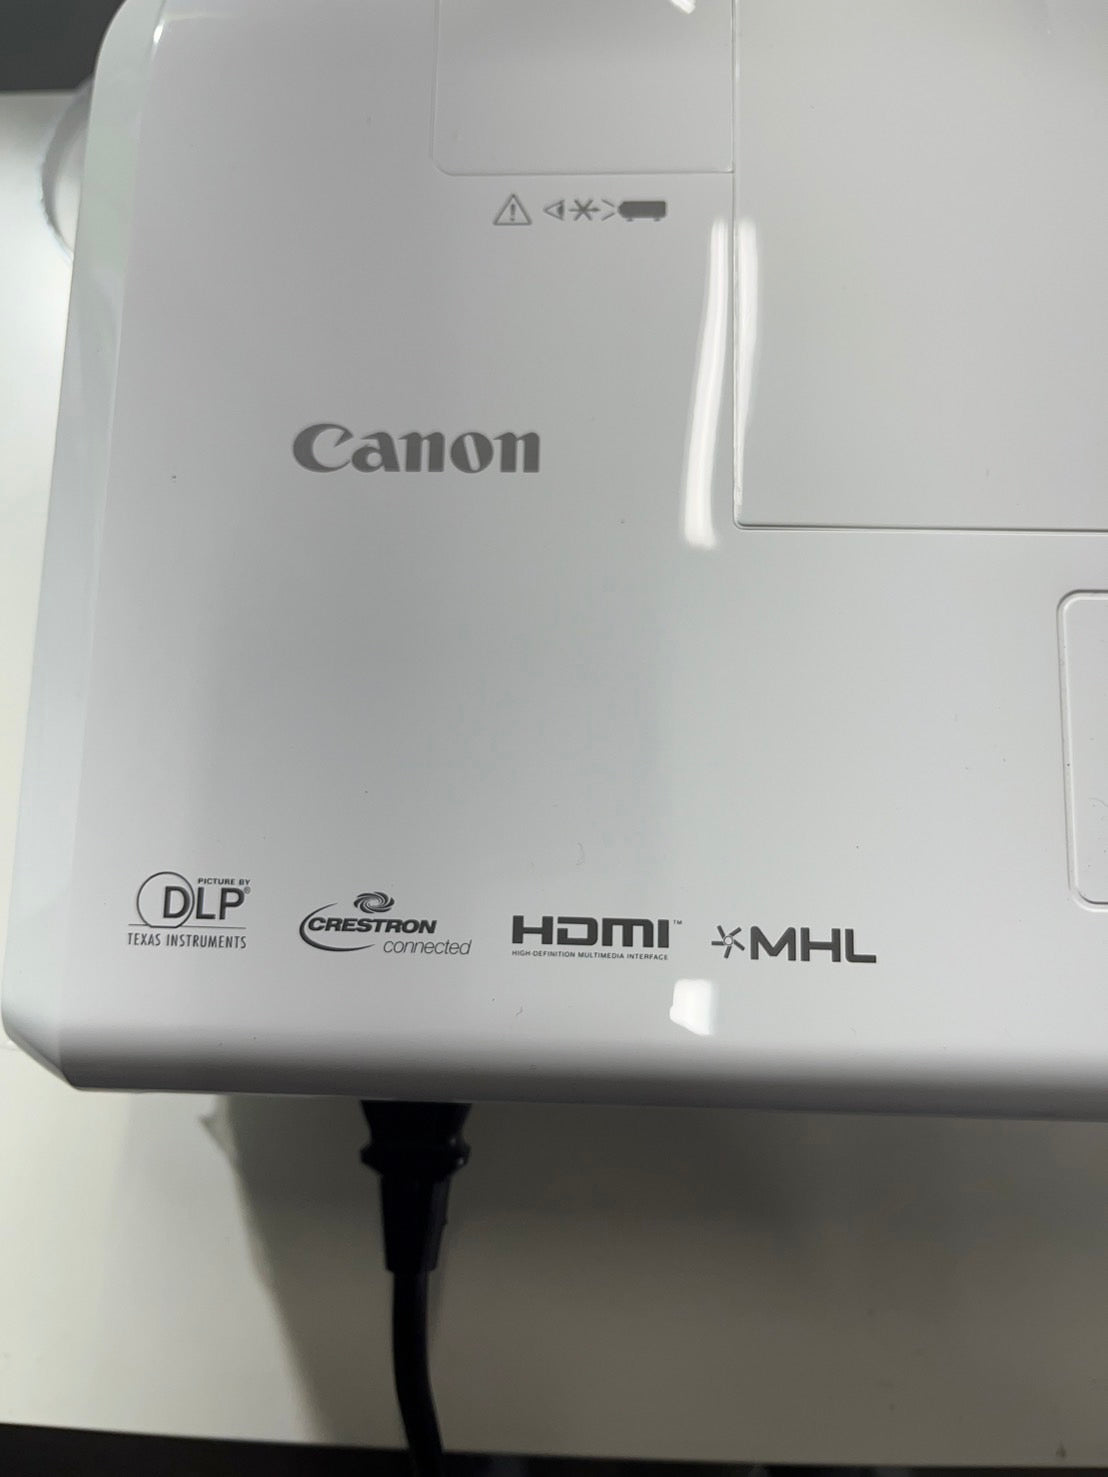 CANON プロジェクター LV-WX310ST 短焦点 リモコンなし 3100lm WXGA 